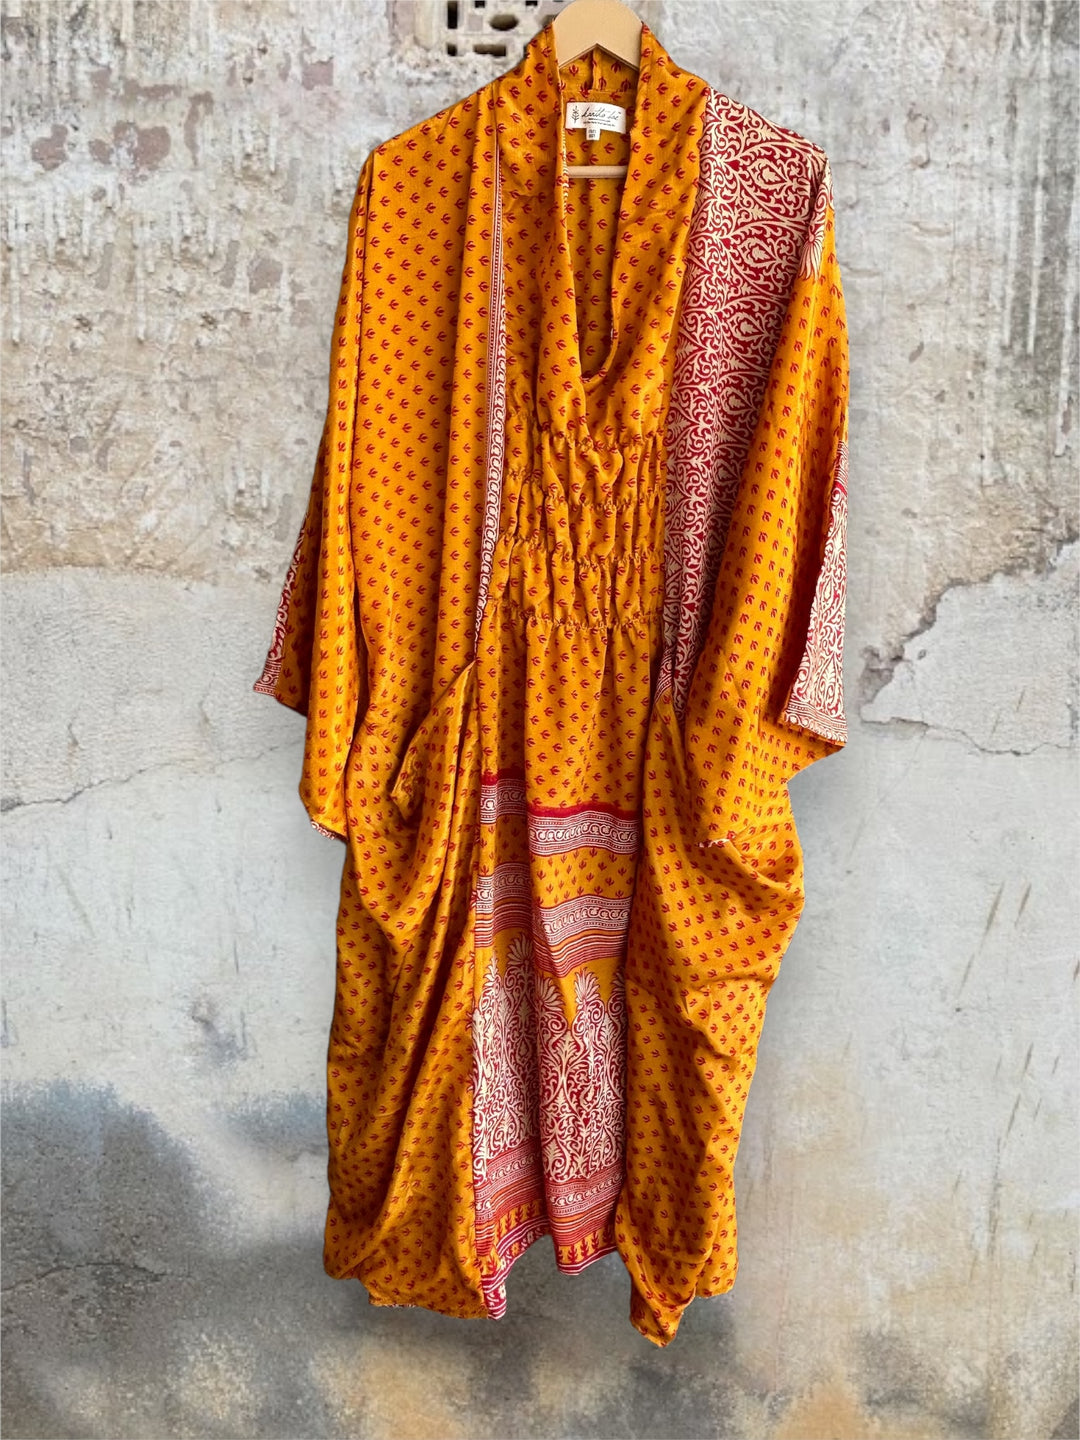 Ruched Dress 0424 106 - Kantha Bae